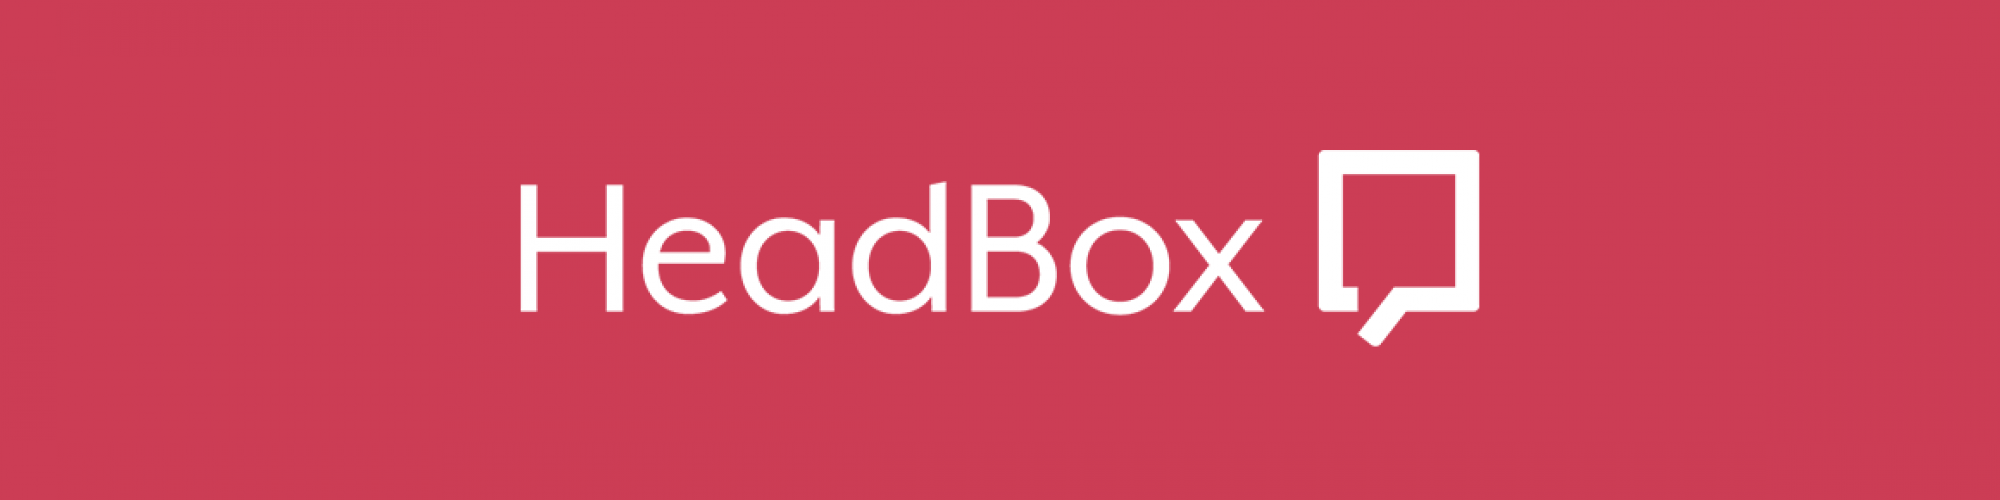 HeadBox 